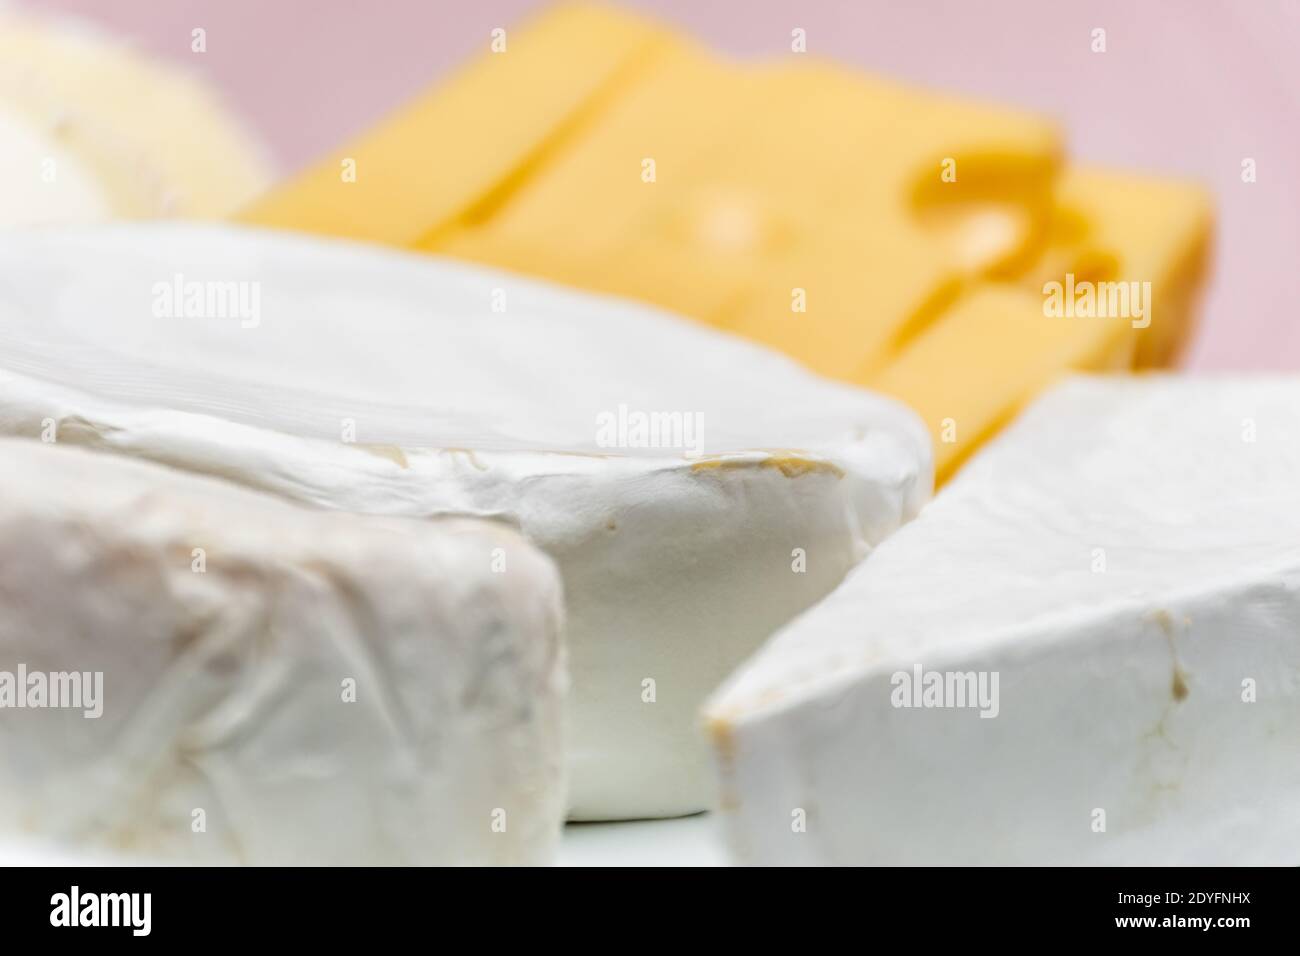 Tableau d'assortiment de fromages. Fromage de chèvre, fromage de vache, fromage de brebis. Fruits et noix de la forêt. Arrière-plan avec un tissu rose, non mis au point Banque D'Images